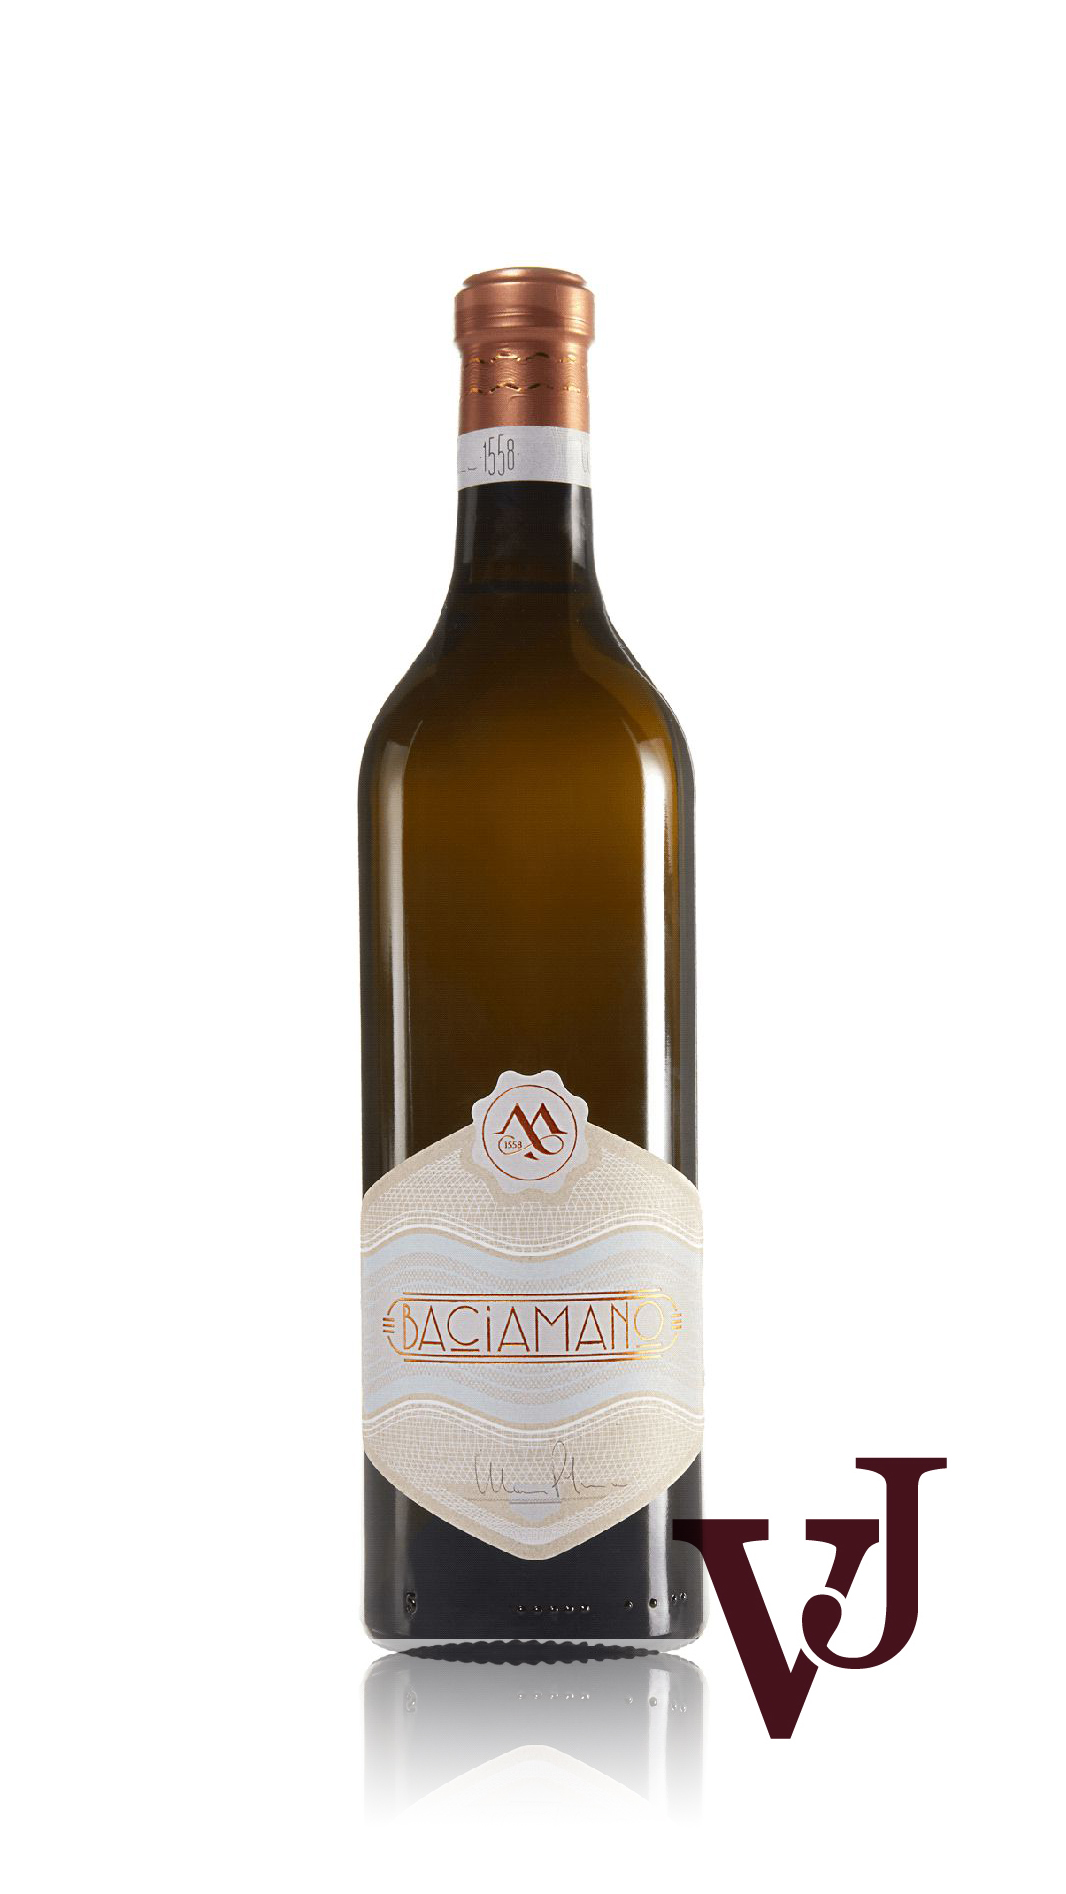 Vitt Vin - Baciamano artikel nummer 5821601 från producenten Mossi Aziende Agricole Vitivinicole från området Italien - Vinjournalen.se